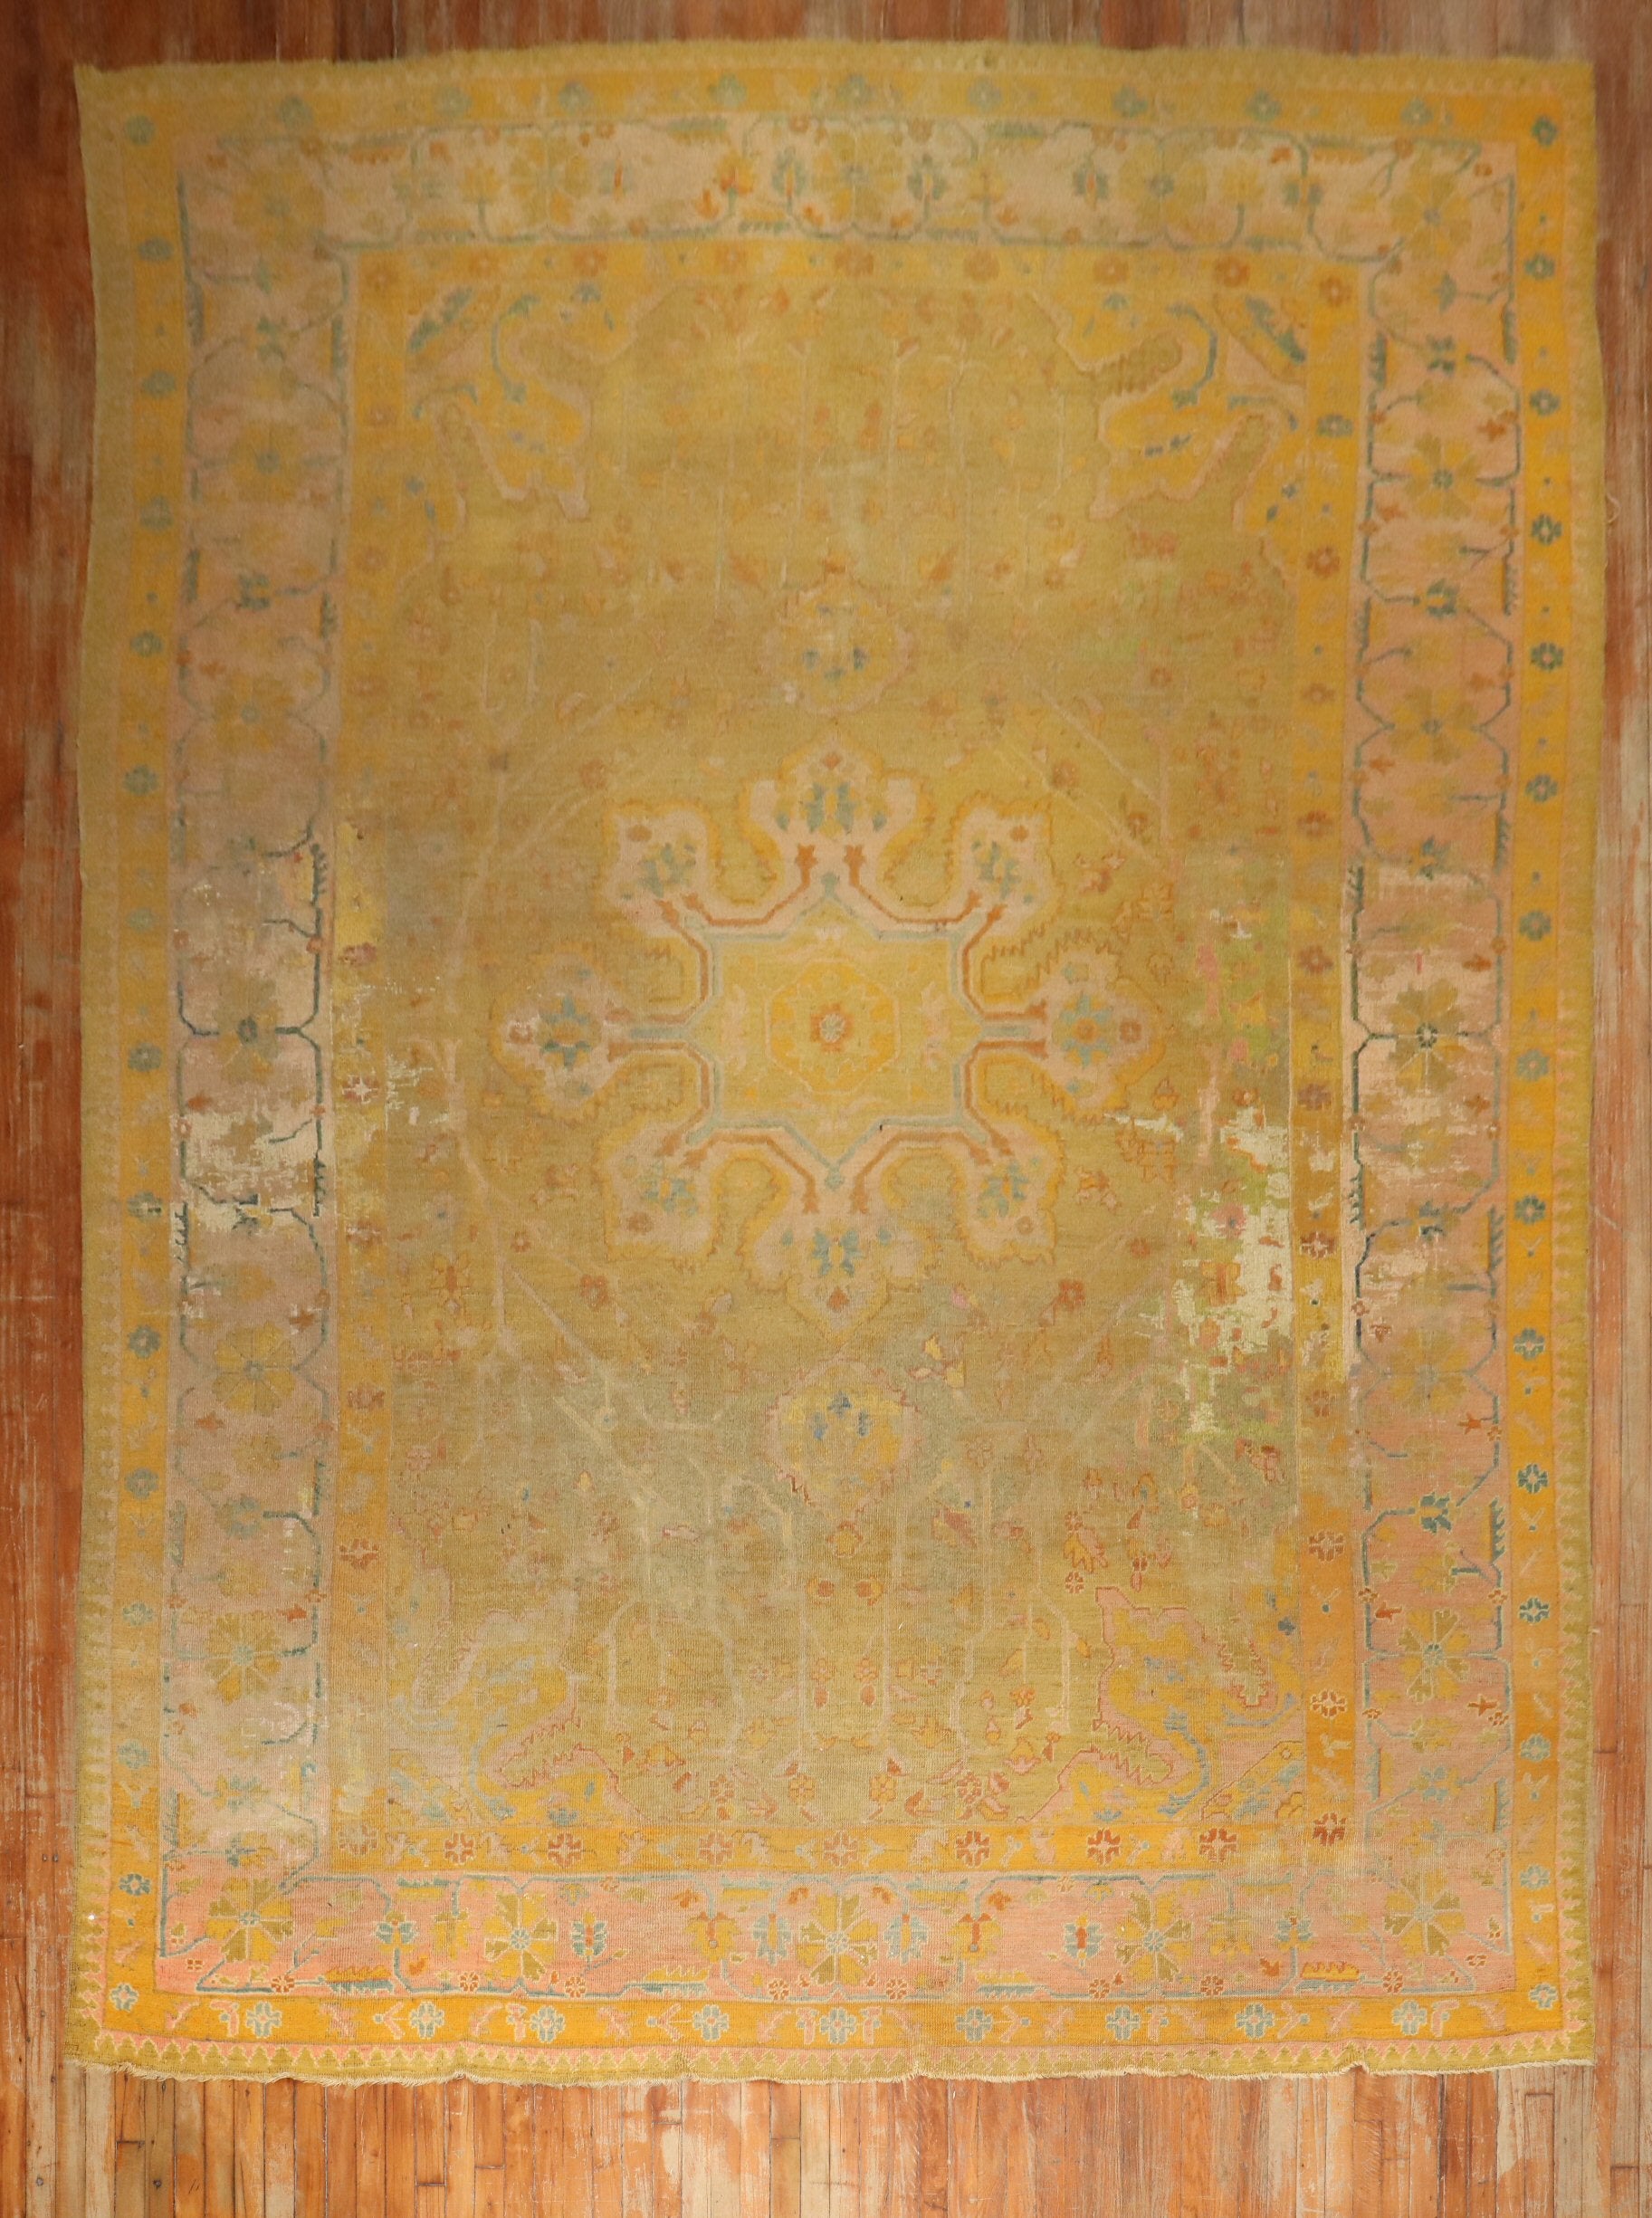 Fin du 19ème siècle, ancien tapis turc Oushak vieilli

Détails
rug no.	j3375
taille	9' 9